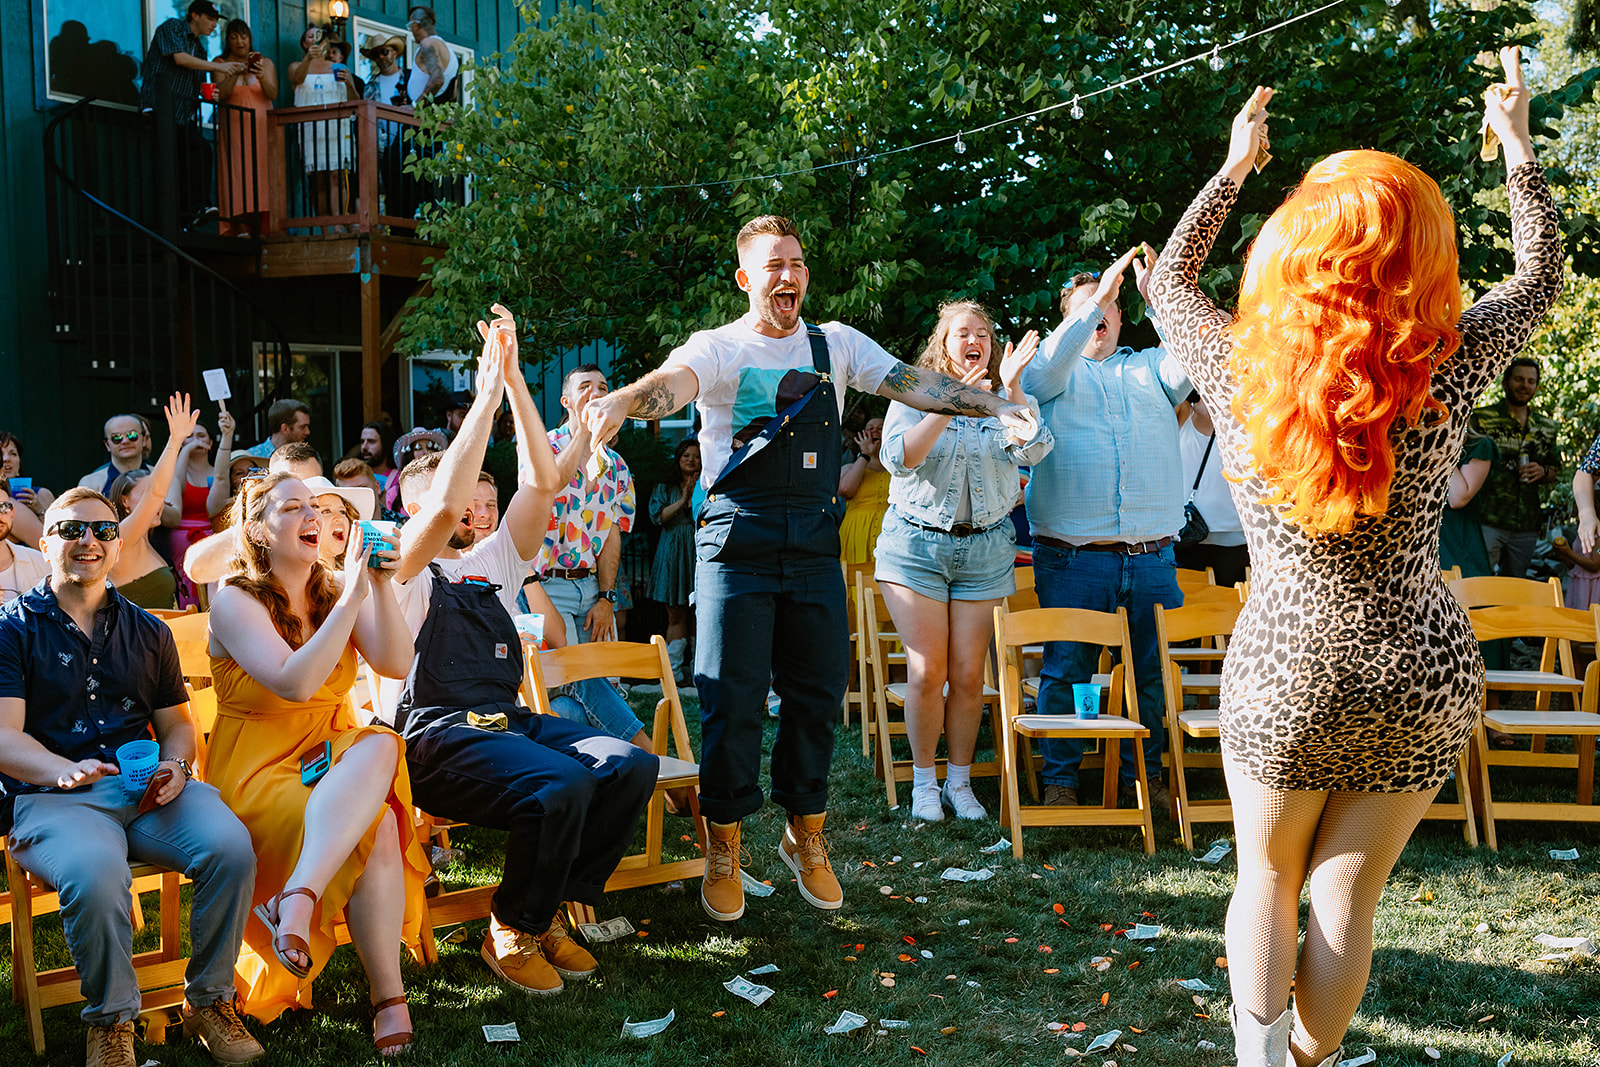 Oregon backyard wedding reception drag show